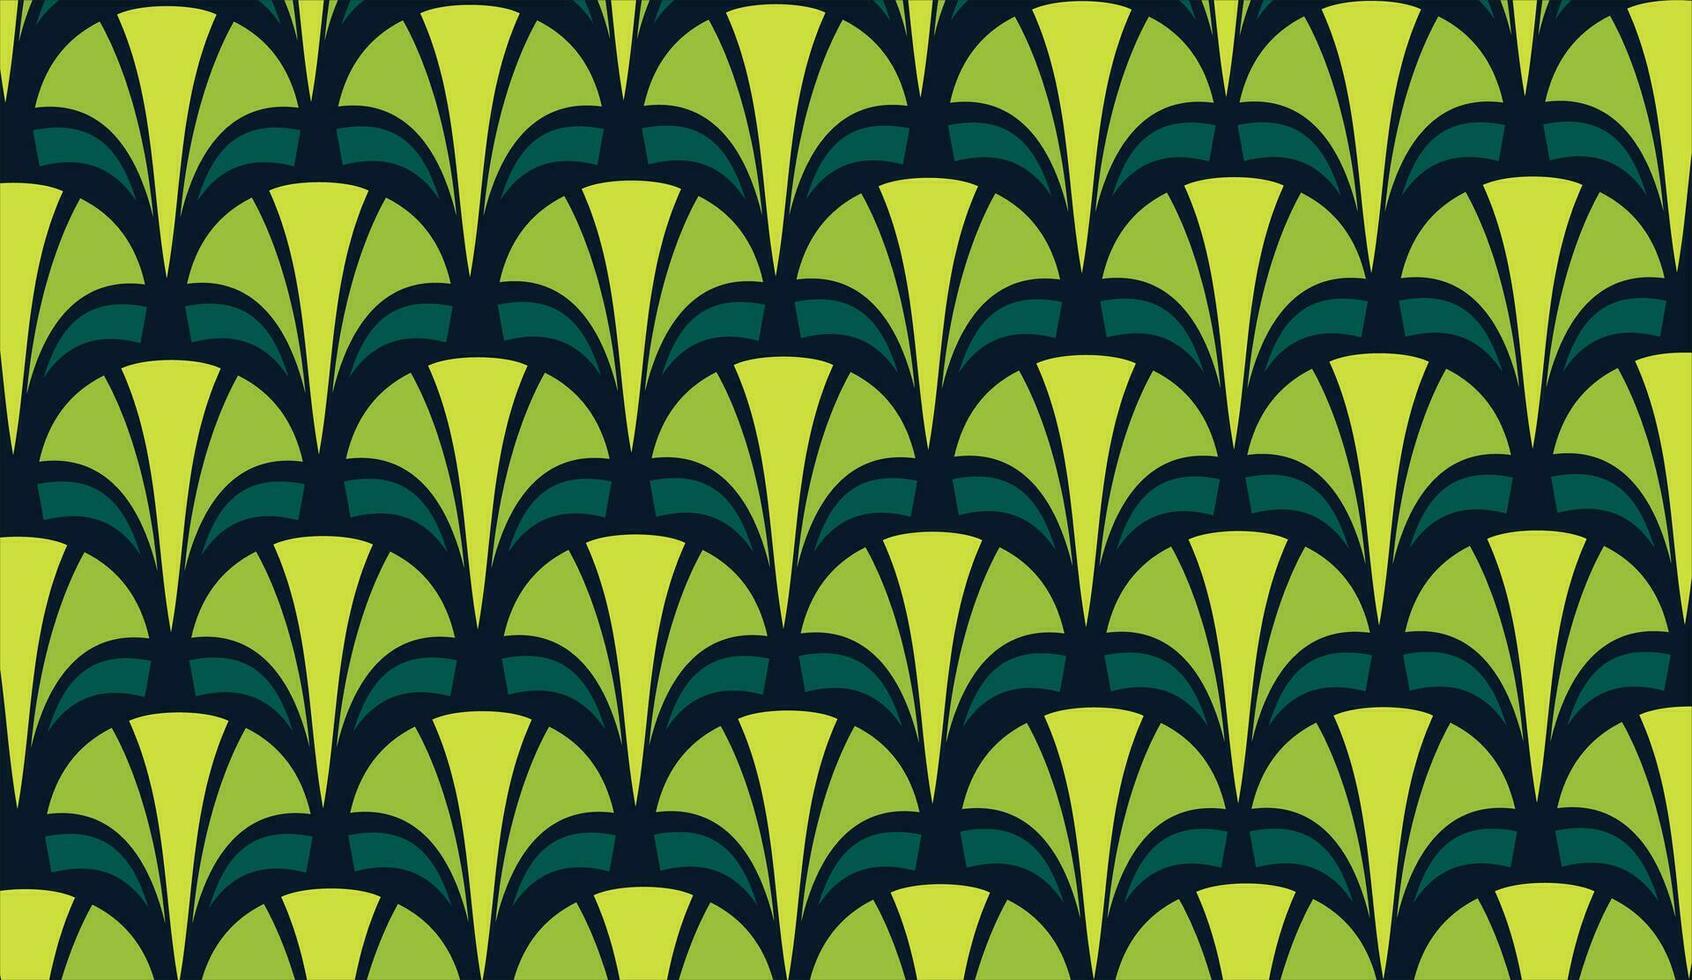 hand fan pattern design, fan background illustration. pattern fan background vector